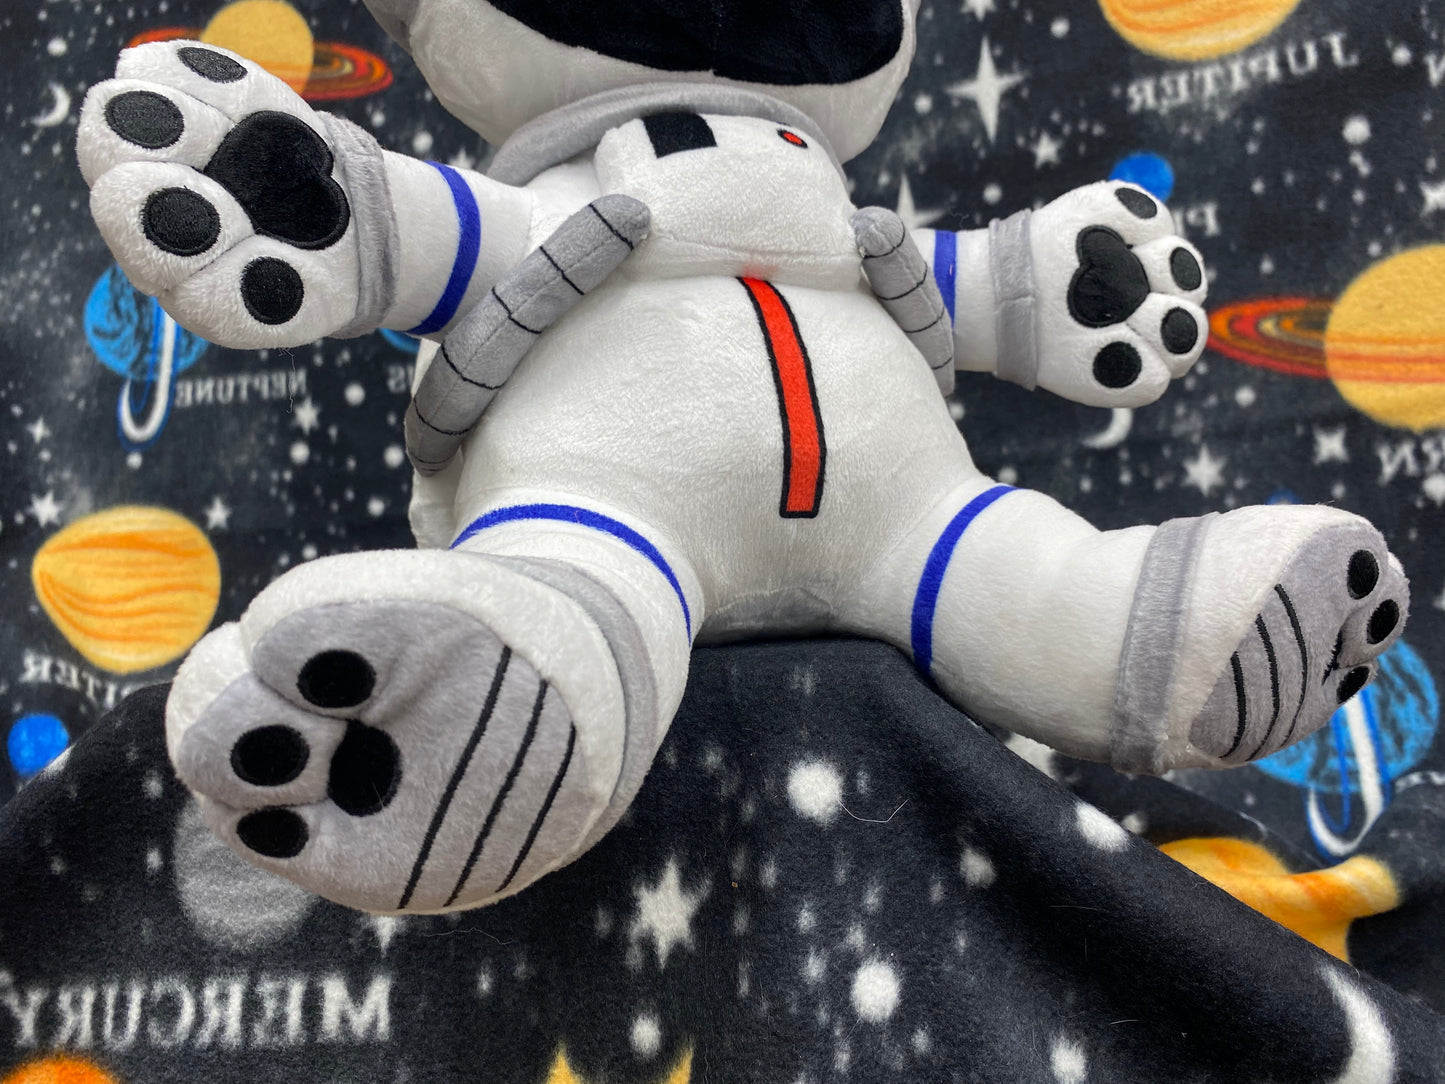 Space Buddies- Astro Dog